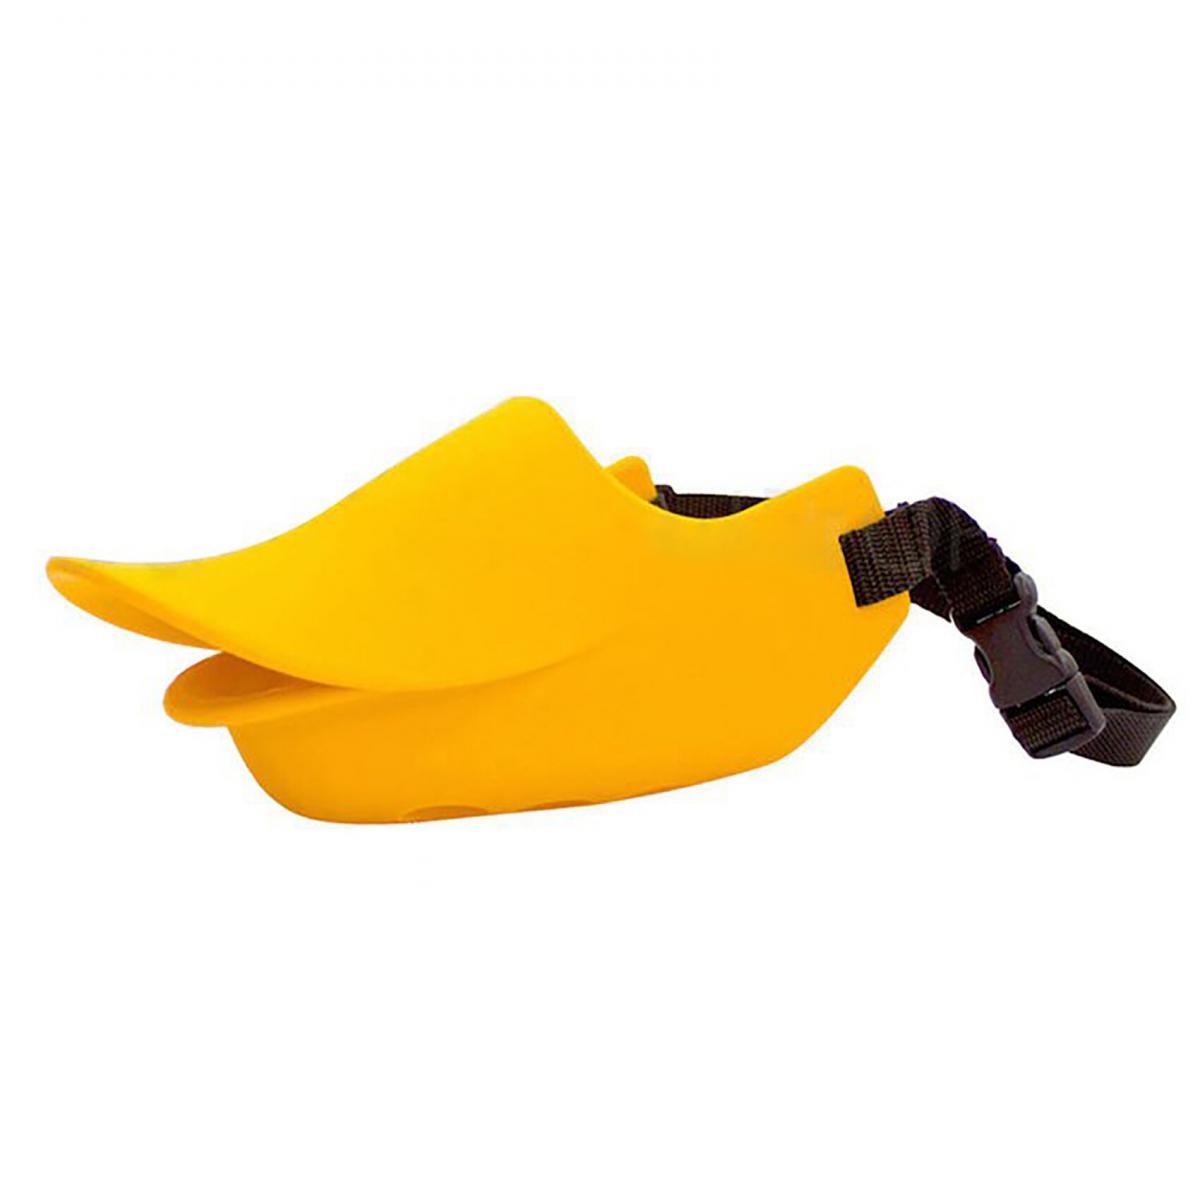 Quack Closed L size (Orange)